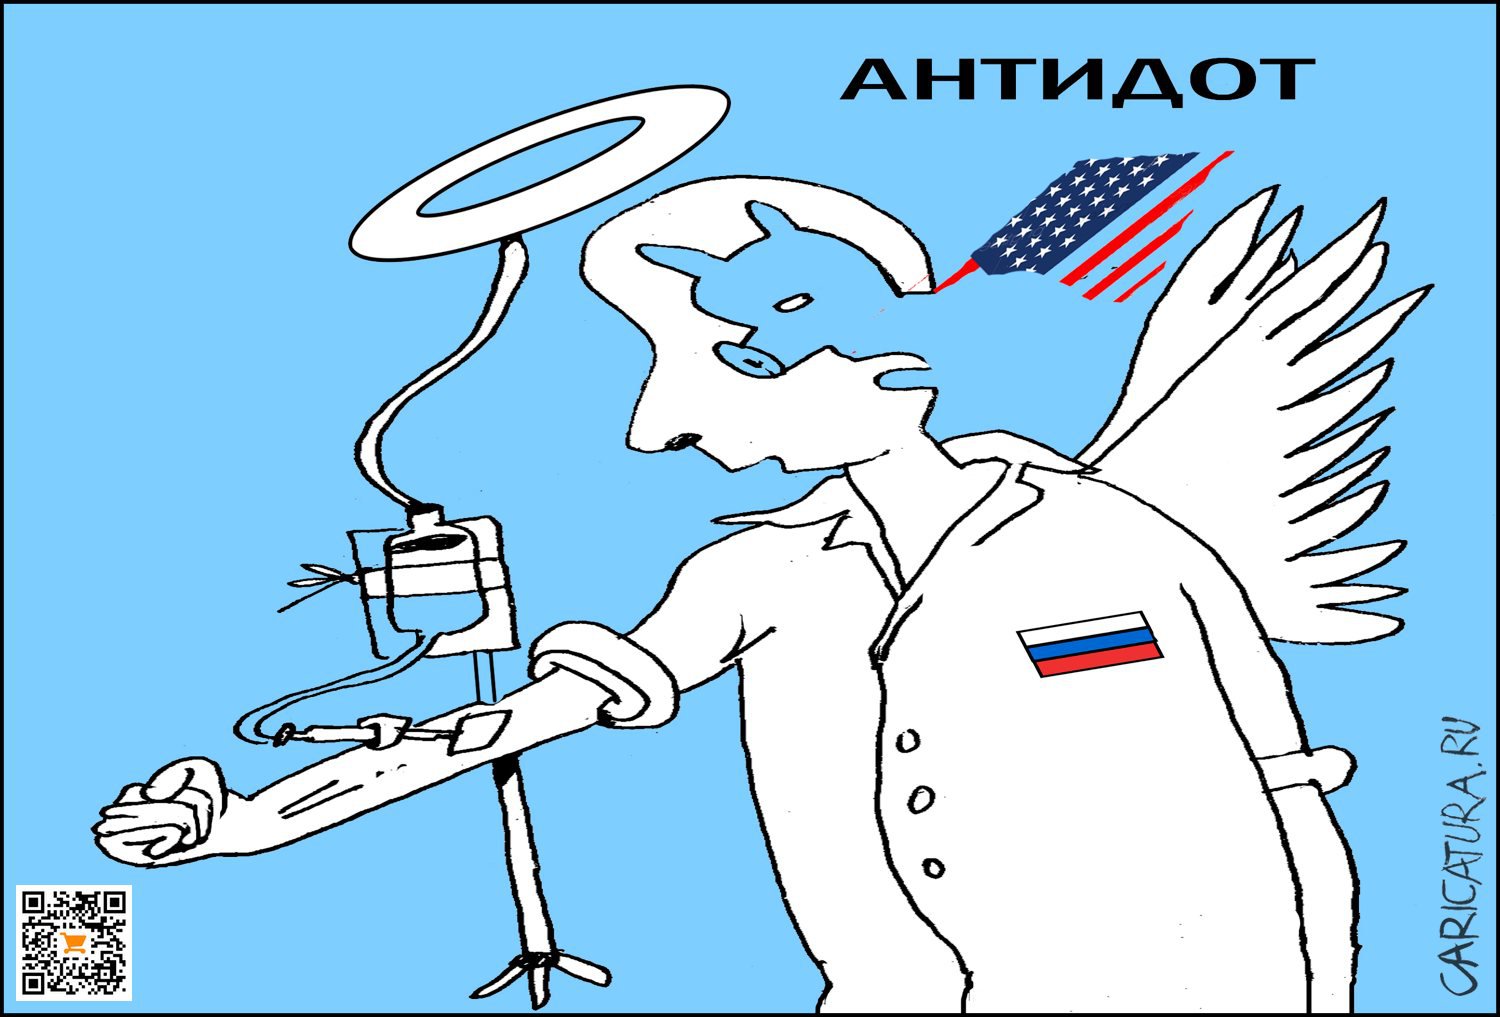 Карикатура "Путин и антидот", Александр Уваров